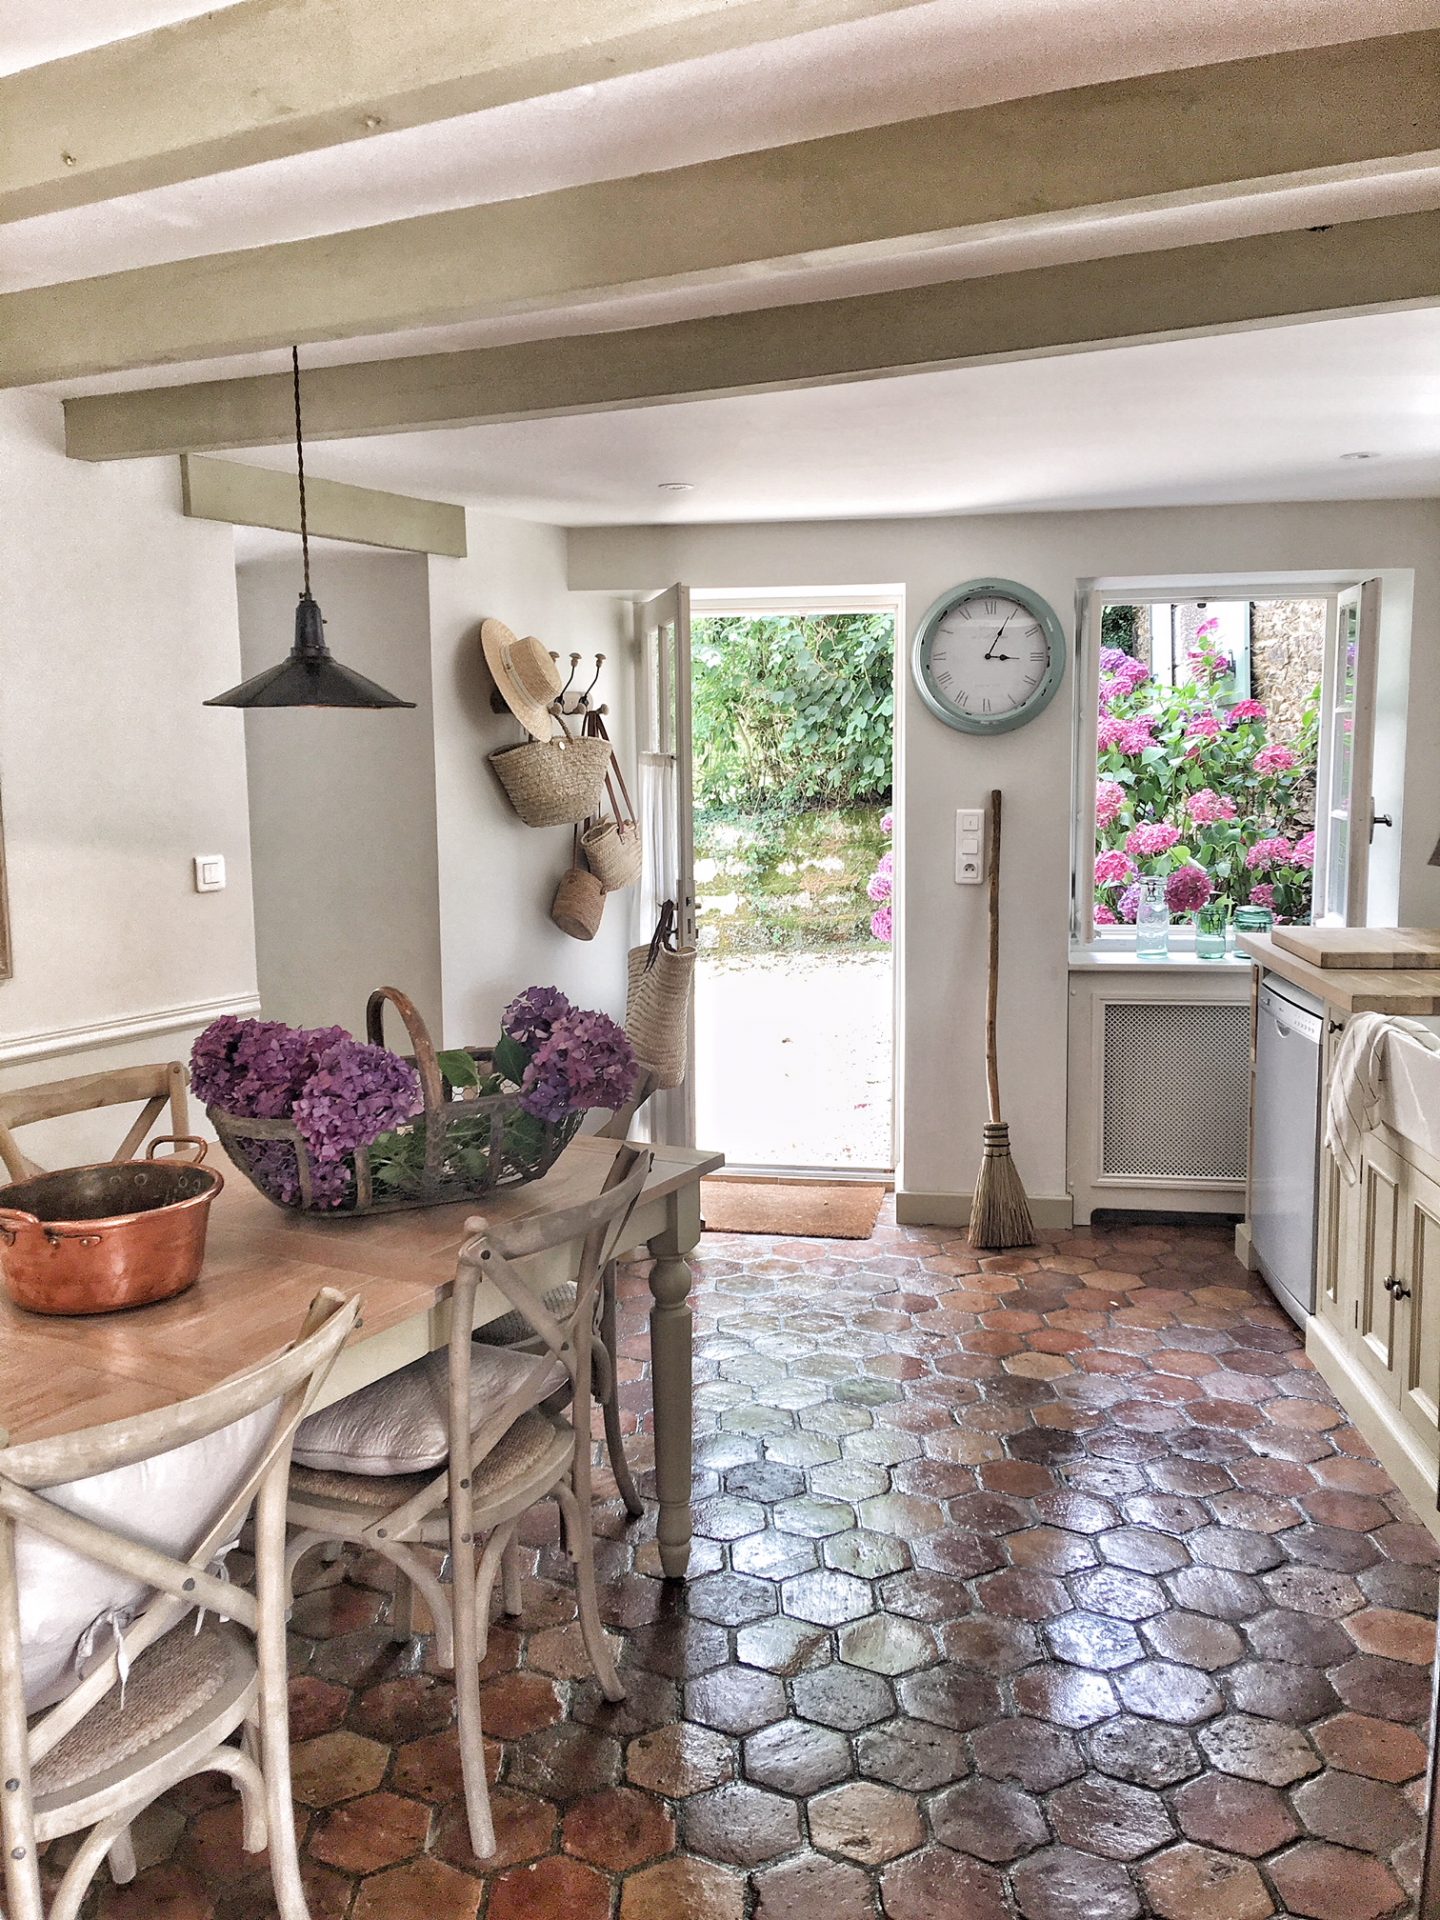 A French Farmhouse Kitchen Vivi Et Margot Hello Lovely Studio 1440x1920 